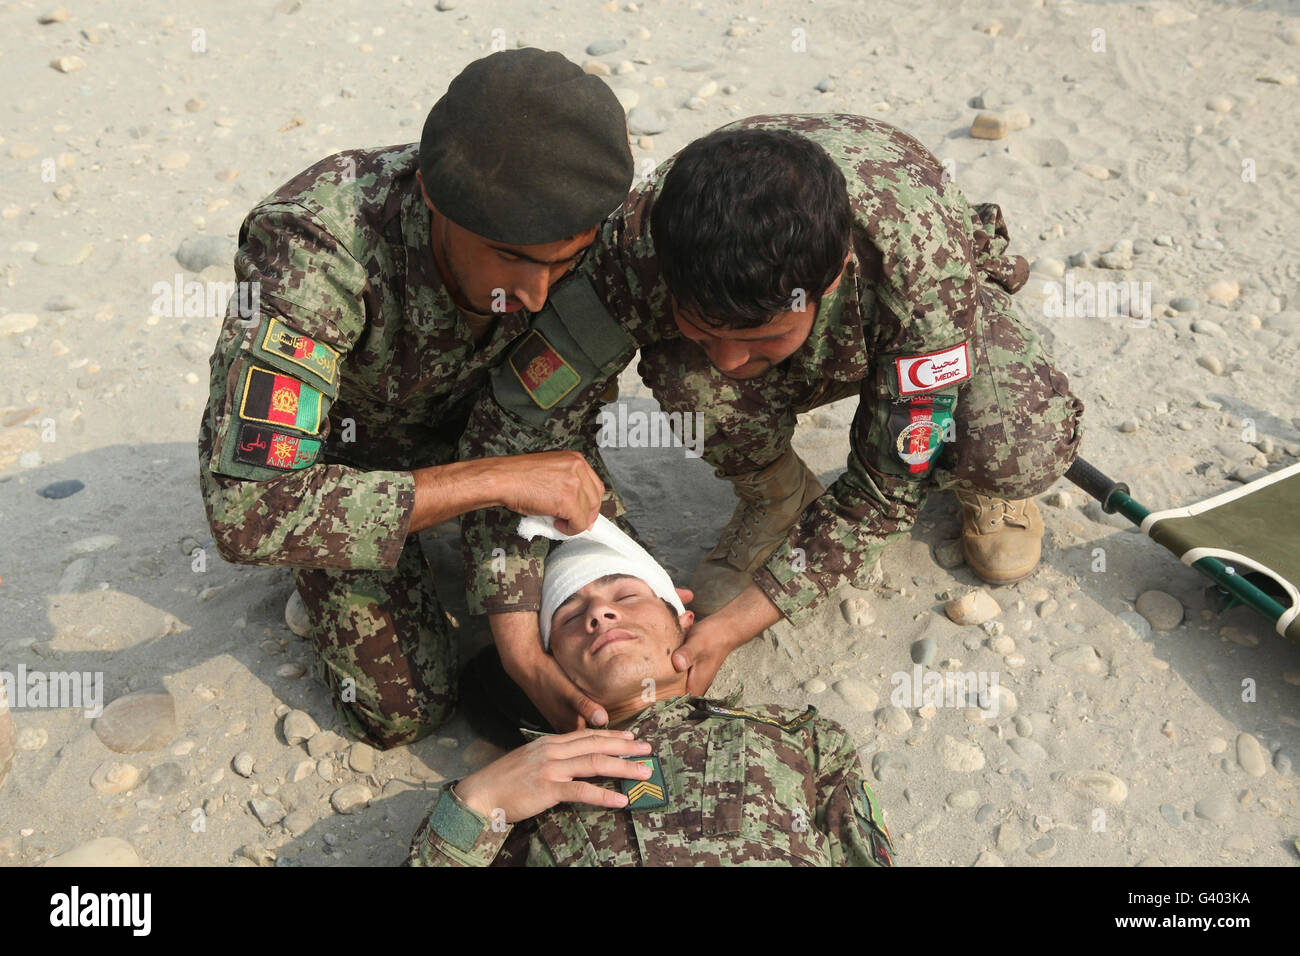 Les soldats de l'Armée nationale afghane mettre un bandage sur la tête d'un autre soldat. Banque D'Images